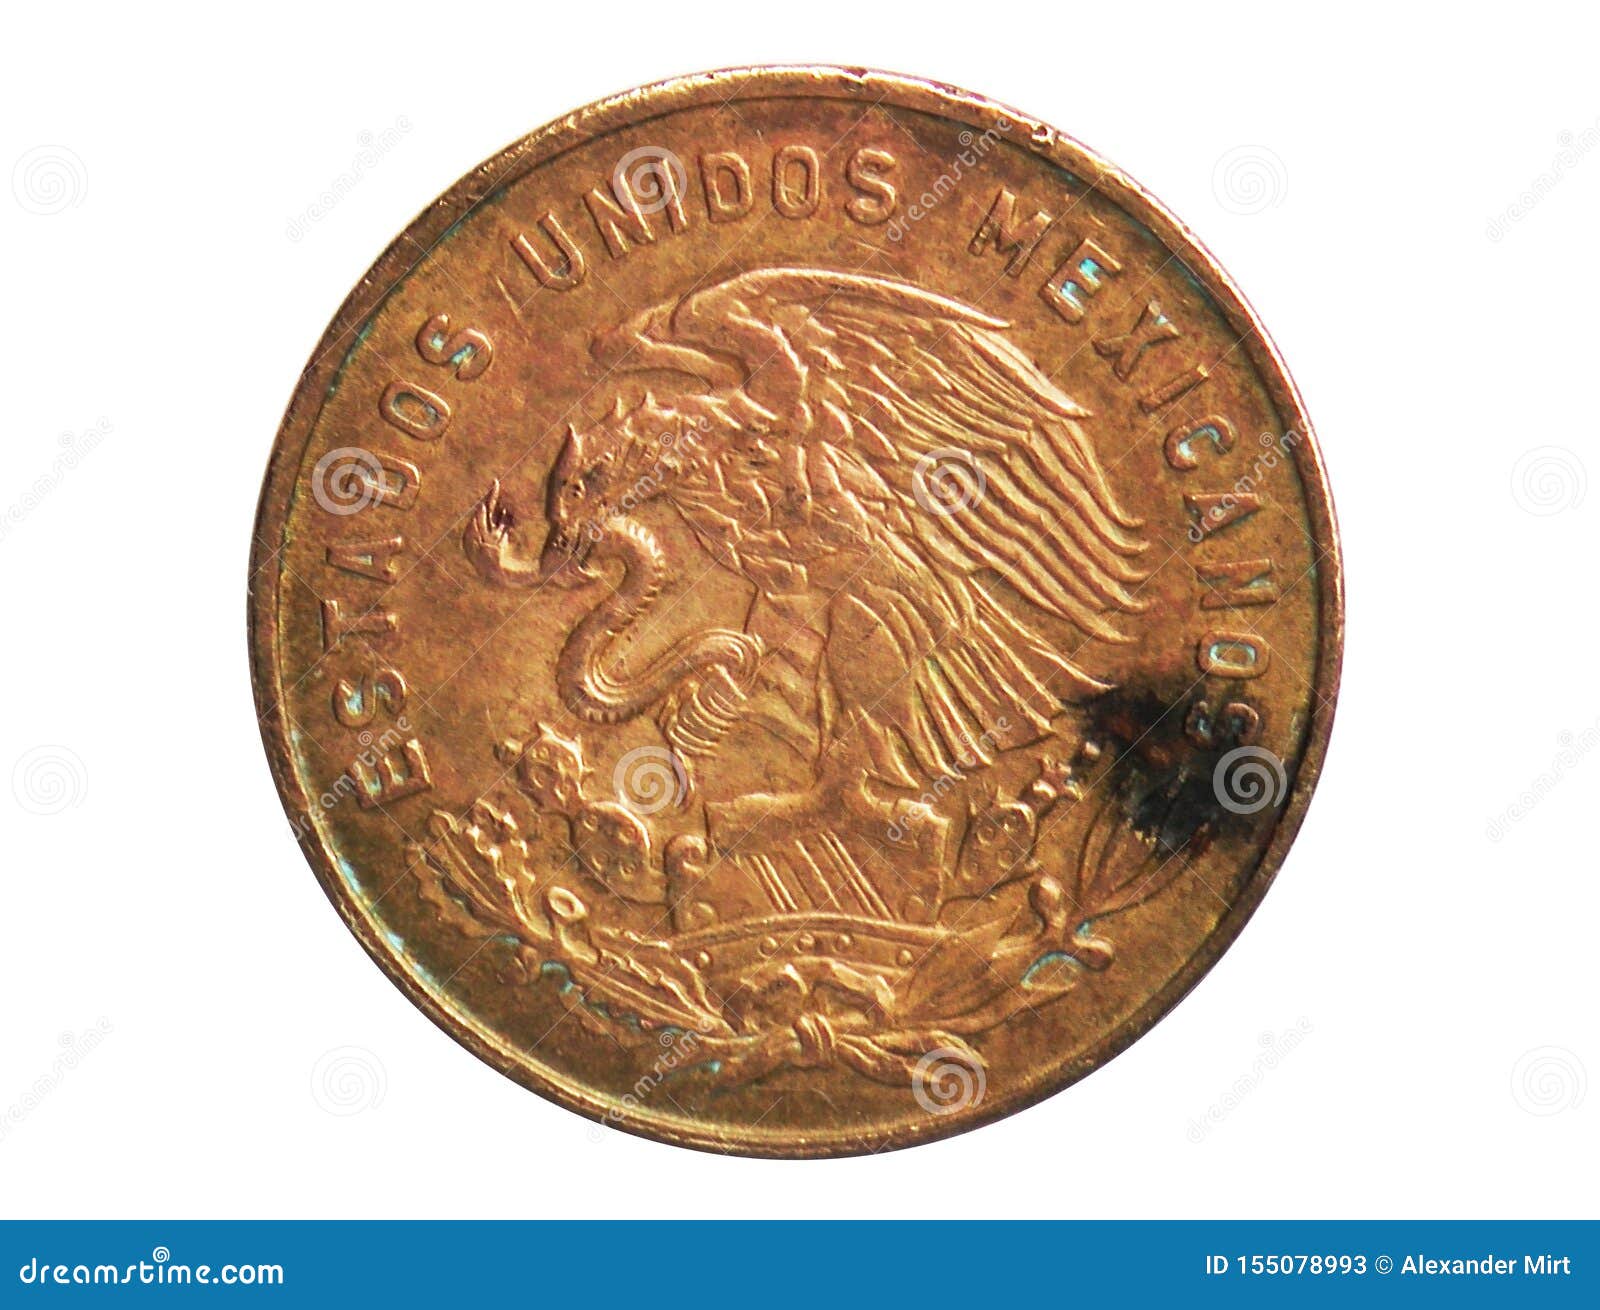 5 centavos coin, 1905~1992 - estados unidos mexicanos circulation serie, bank of mexico